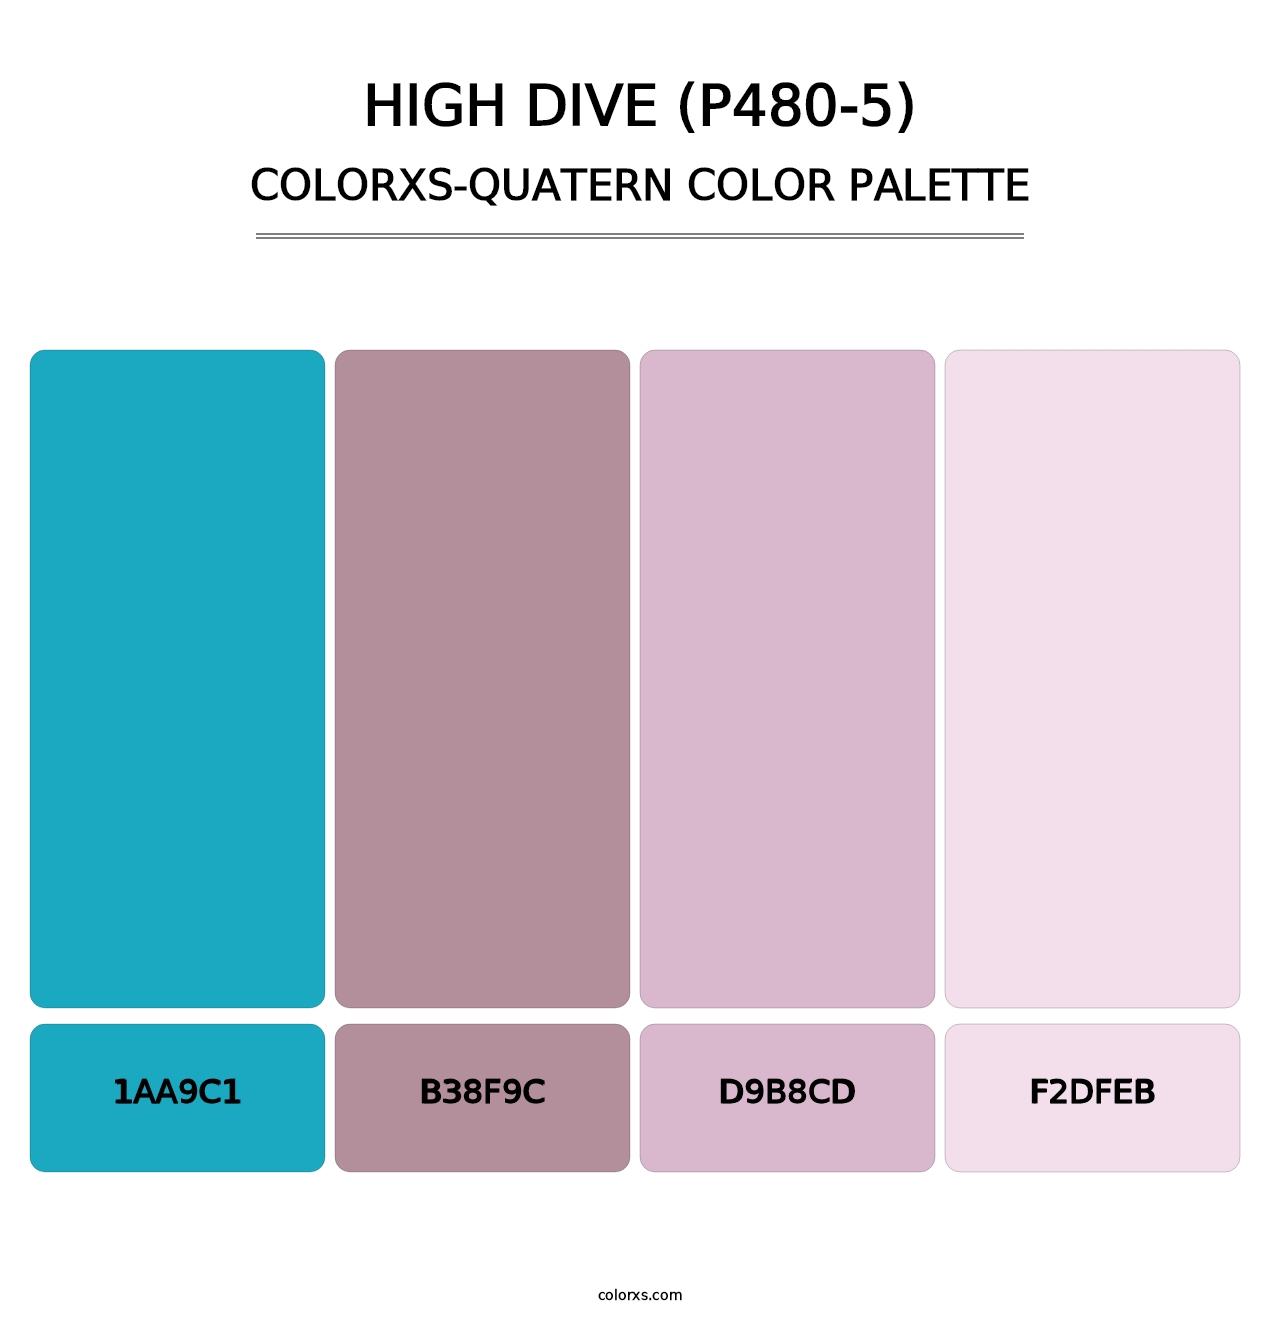 High Dive (P480-5) - Colorxs Quatern Palette